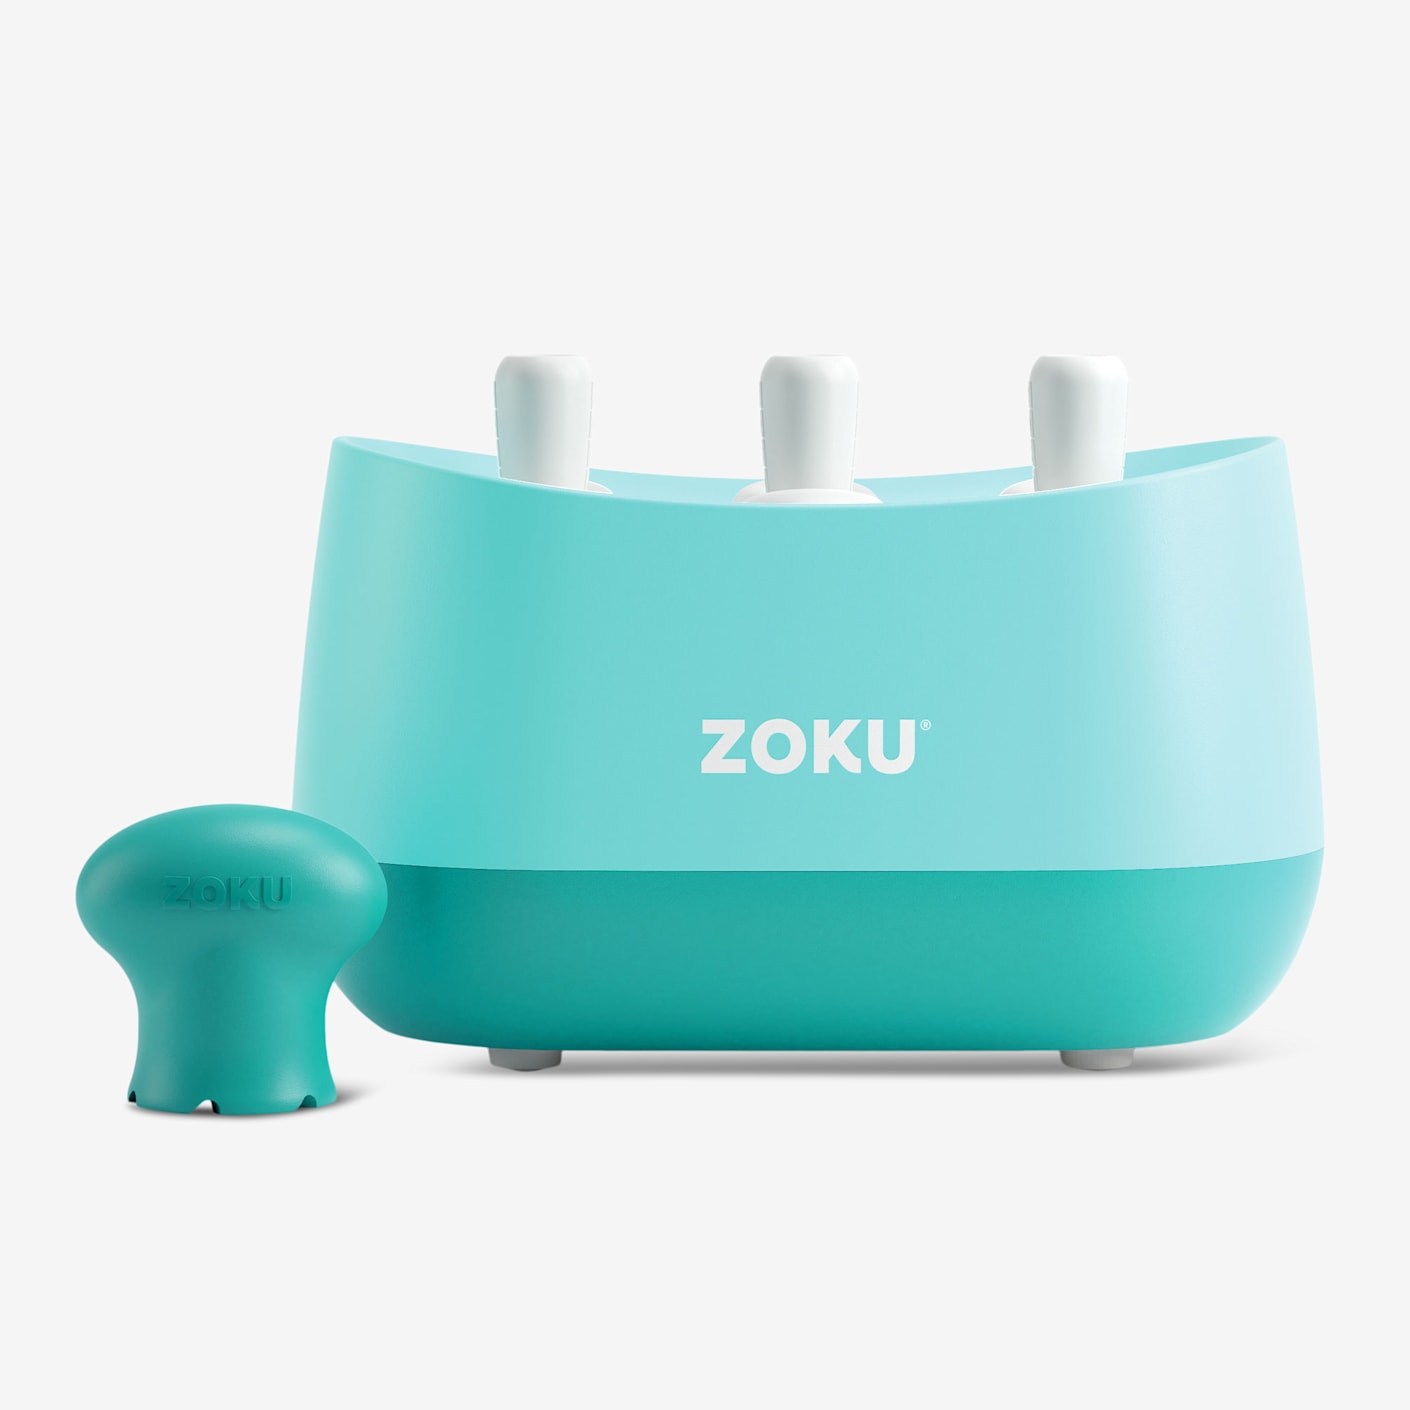 Zoku Ice Cream Maker review